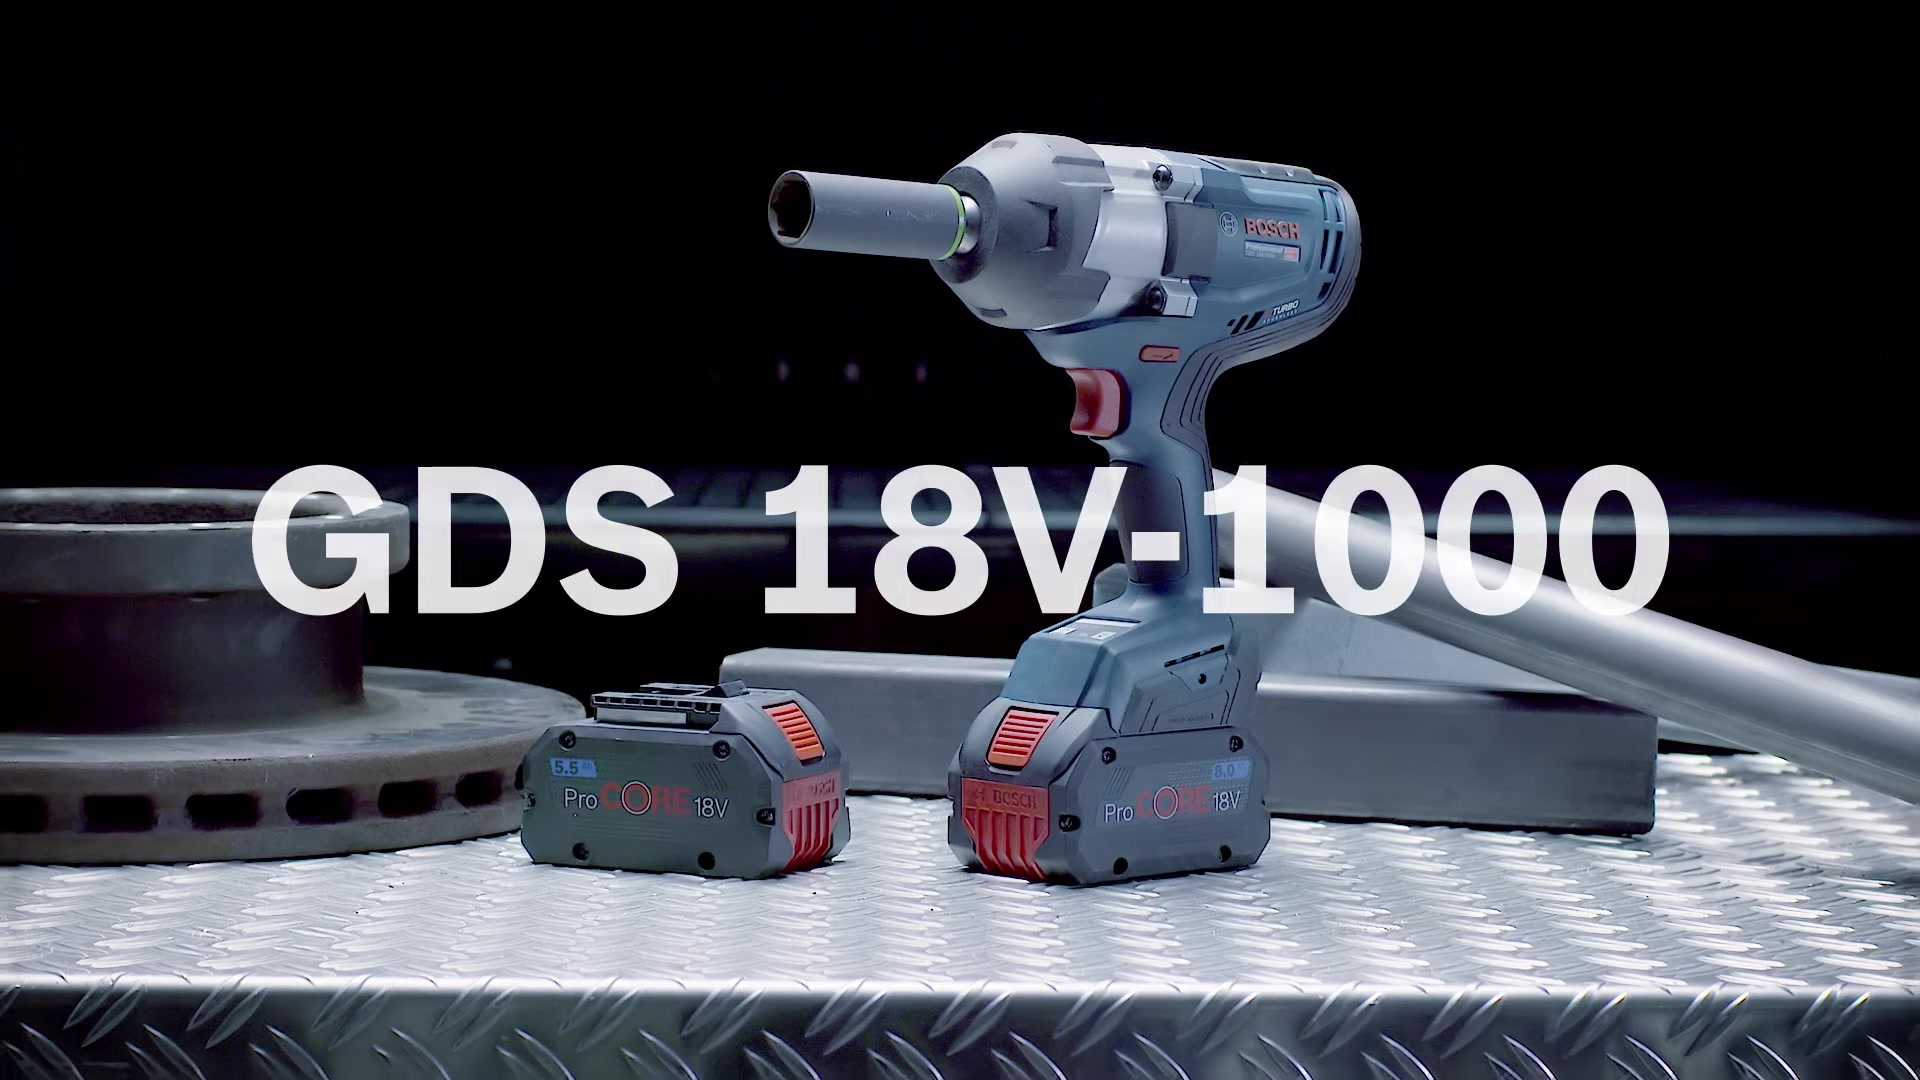 GDS 18V-1000